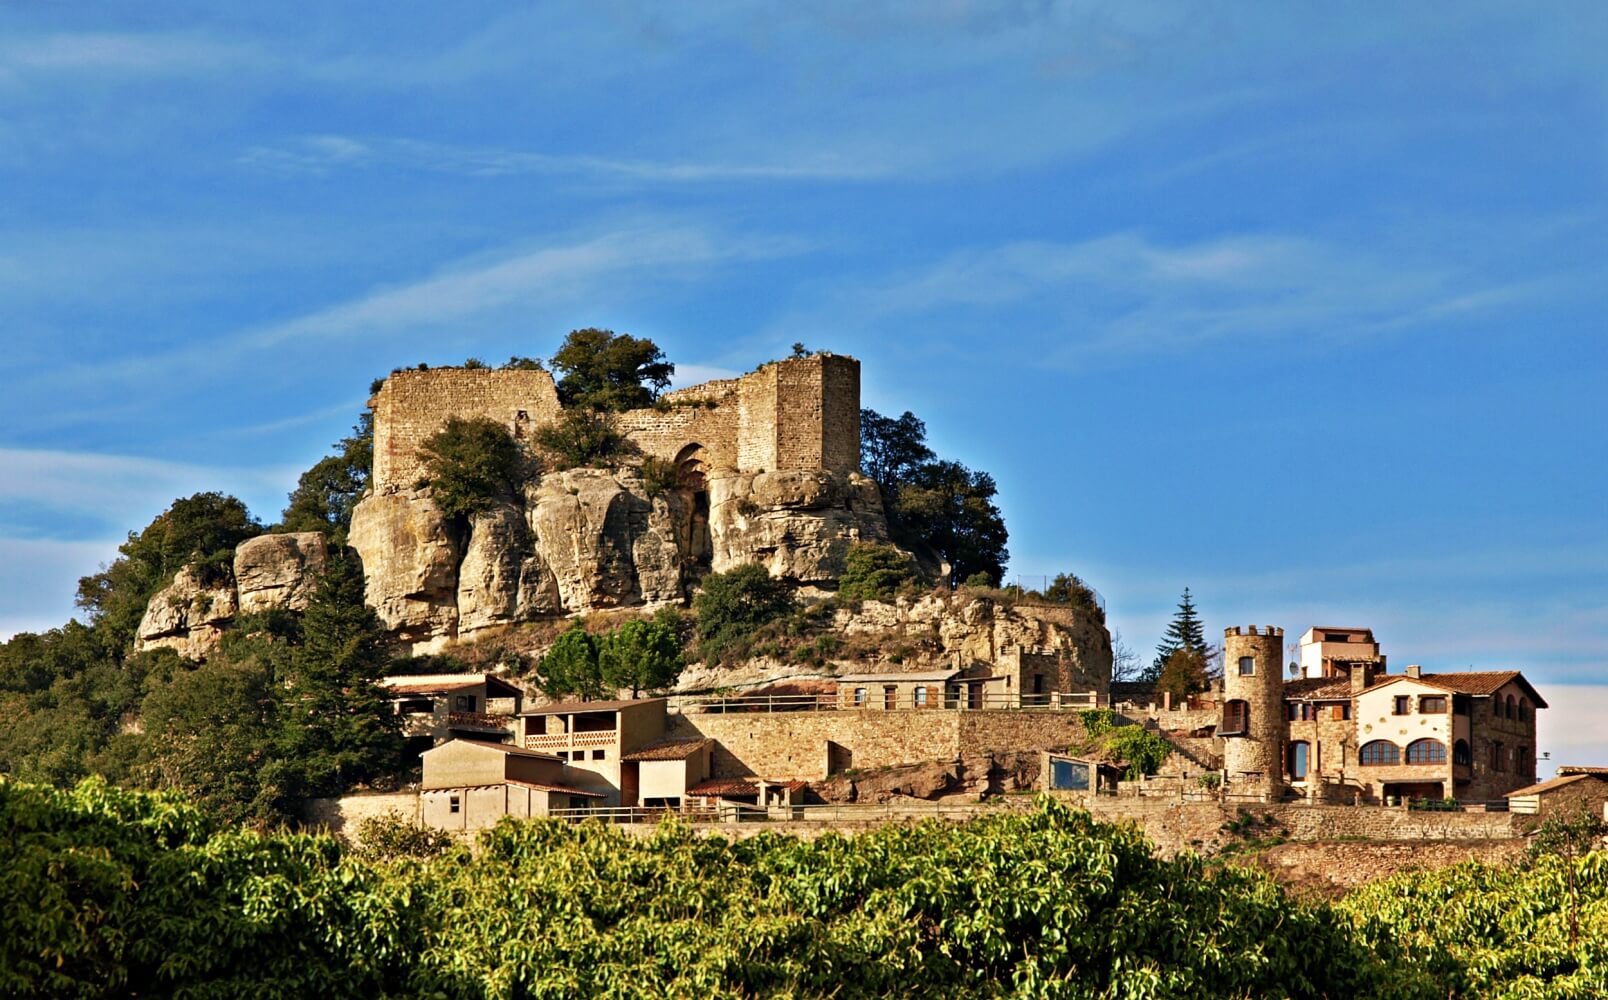 The Castle of Granera